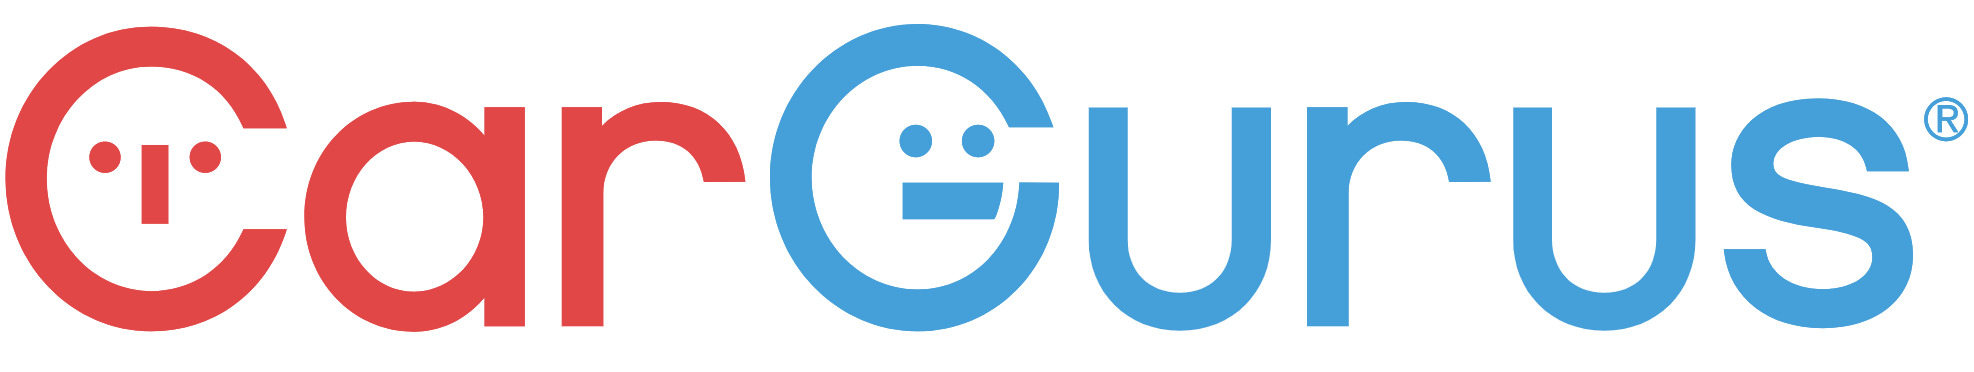 CarGurus logo